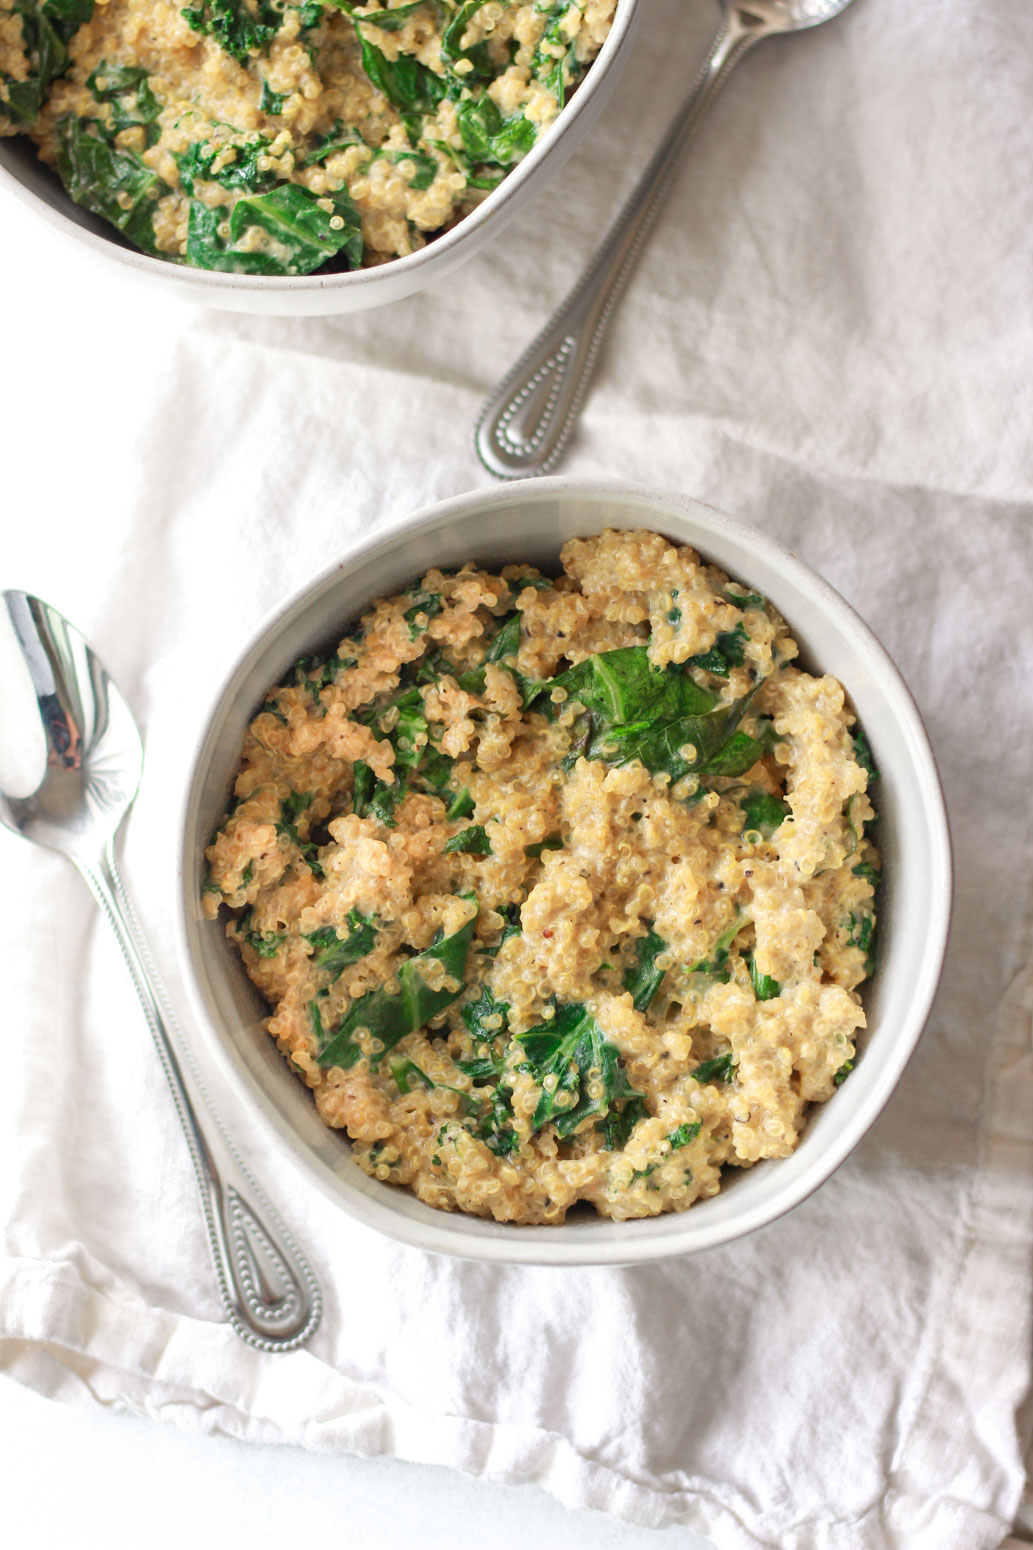 These creamy coconut quinoa and greens make a deliciosu vegan Thanksgiving side dish.